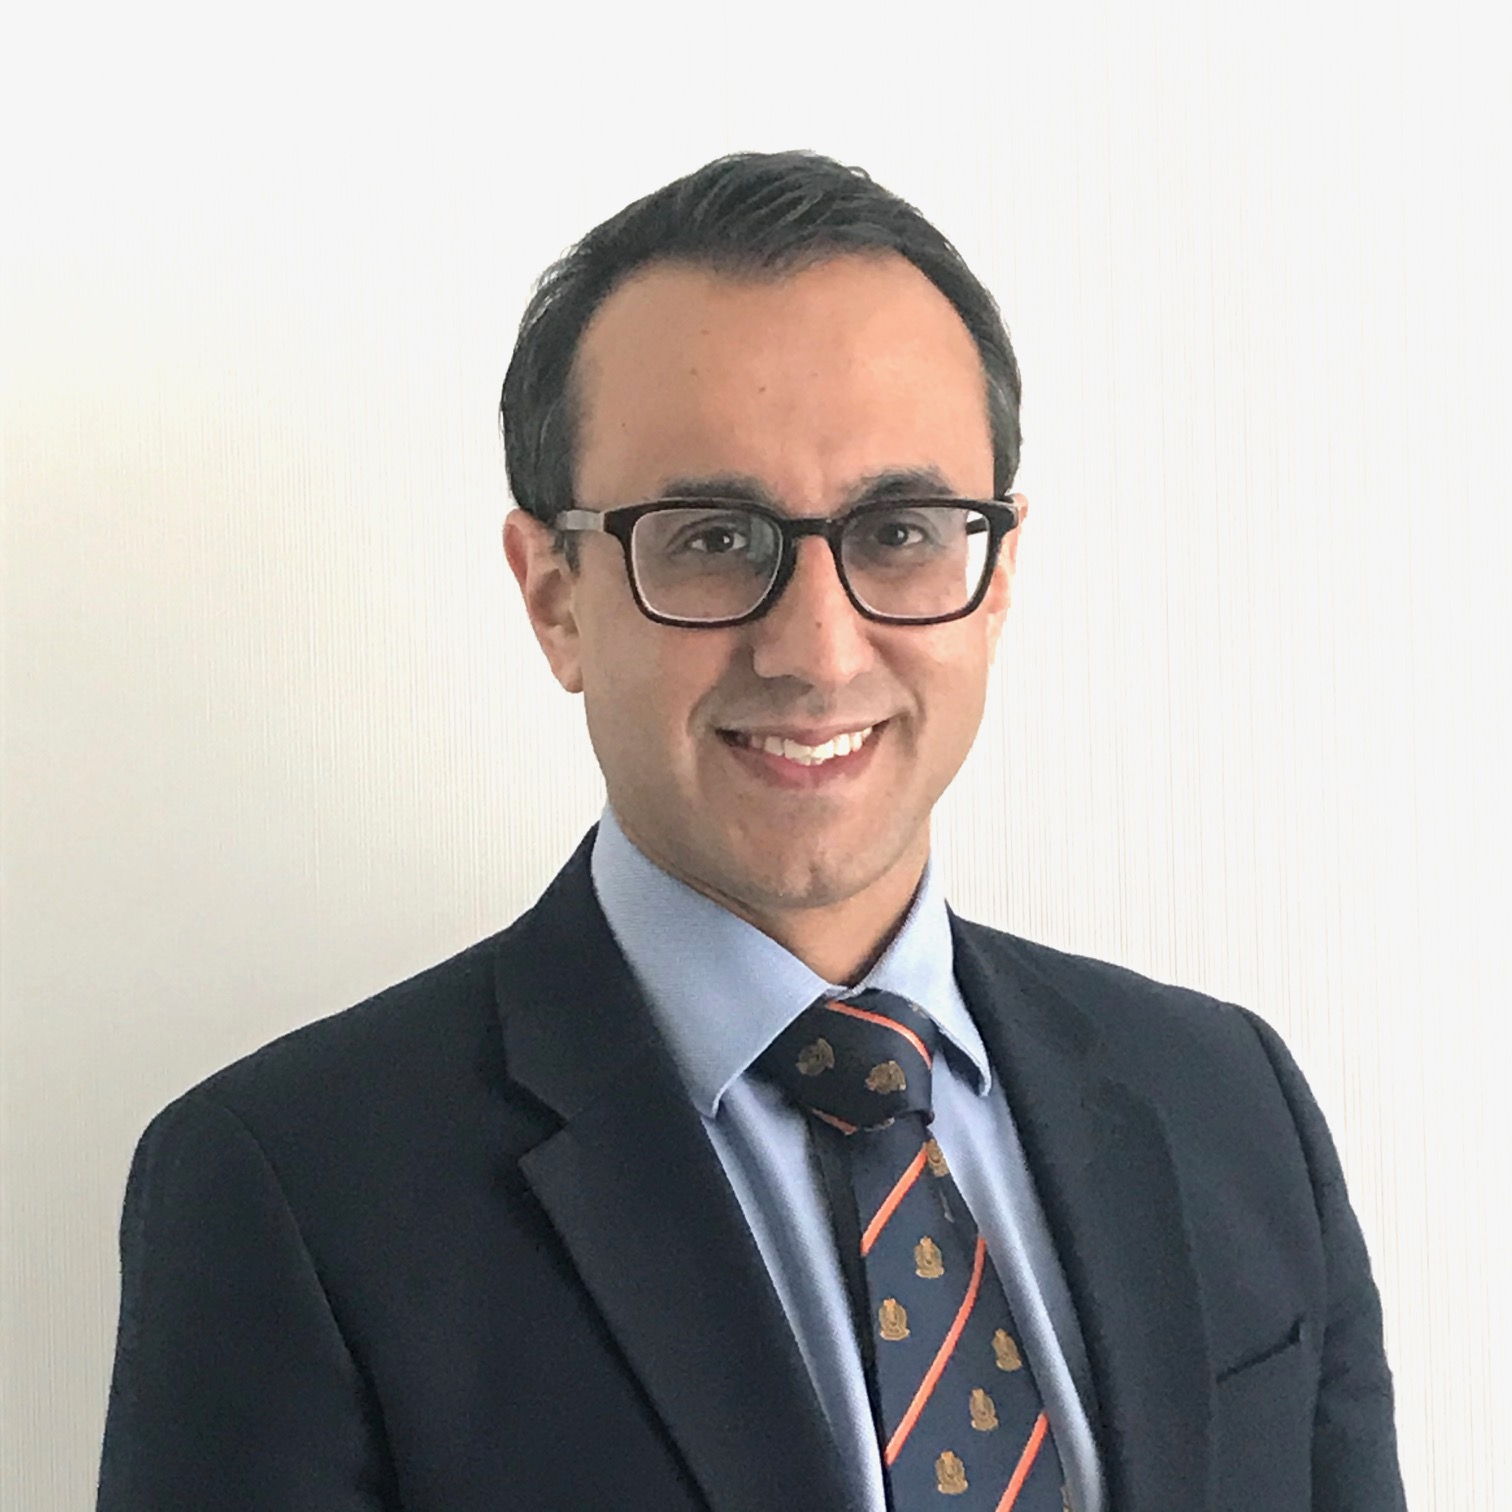 A profile image of Professor Aneil Malhotra